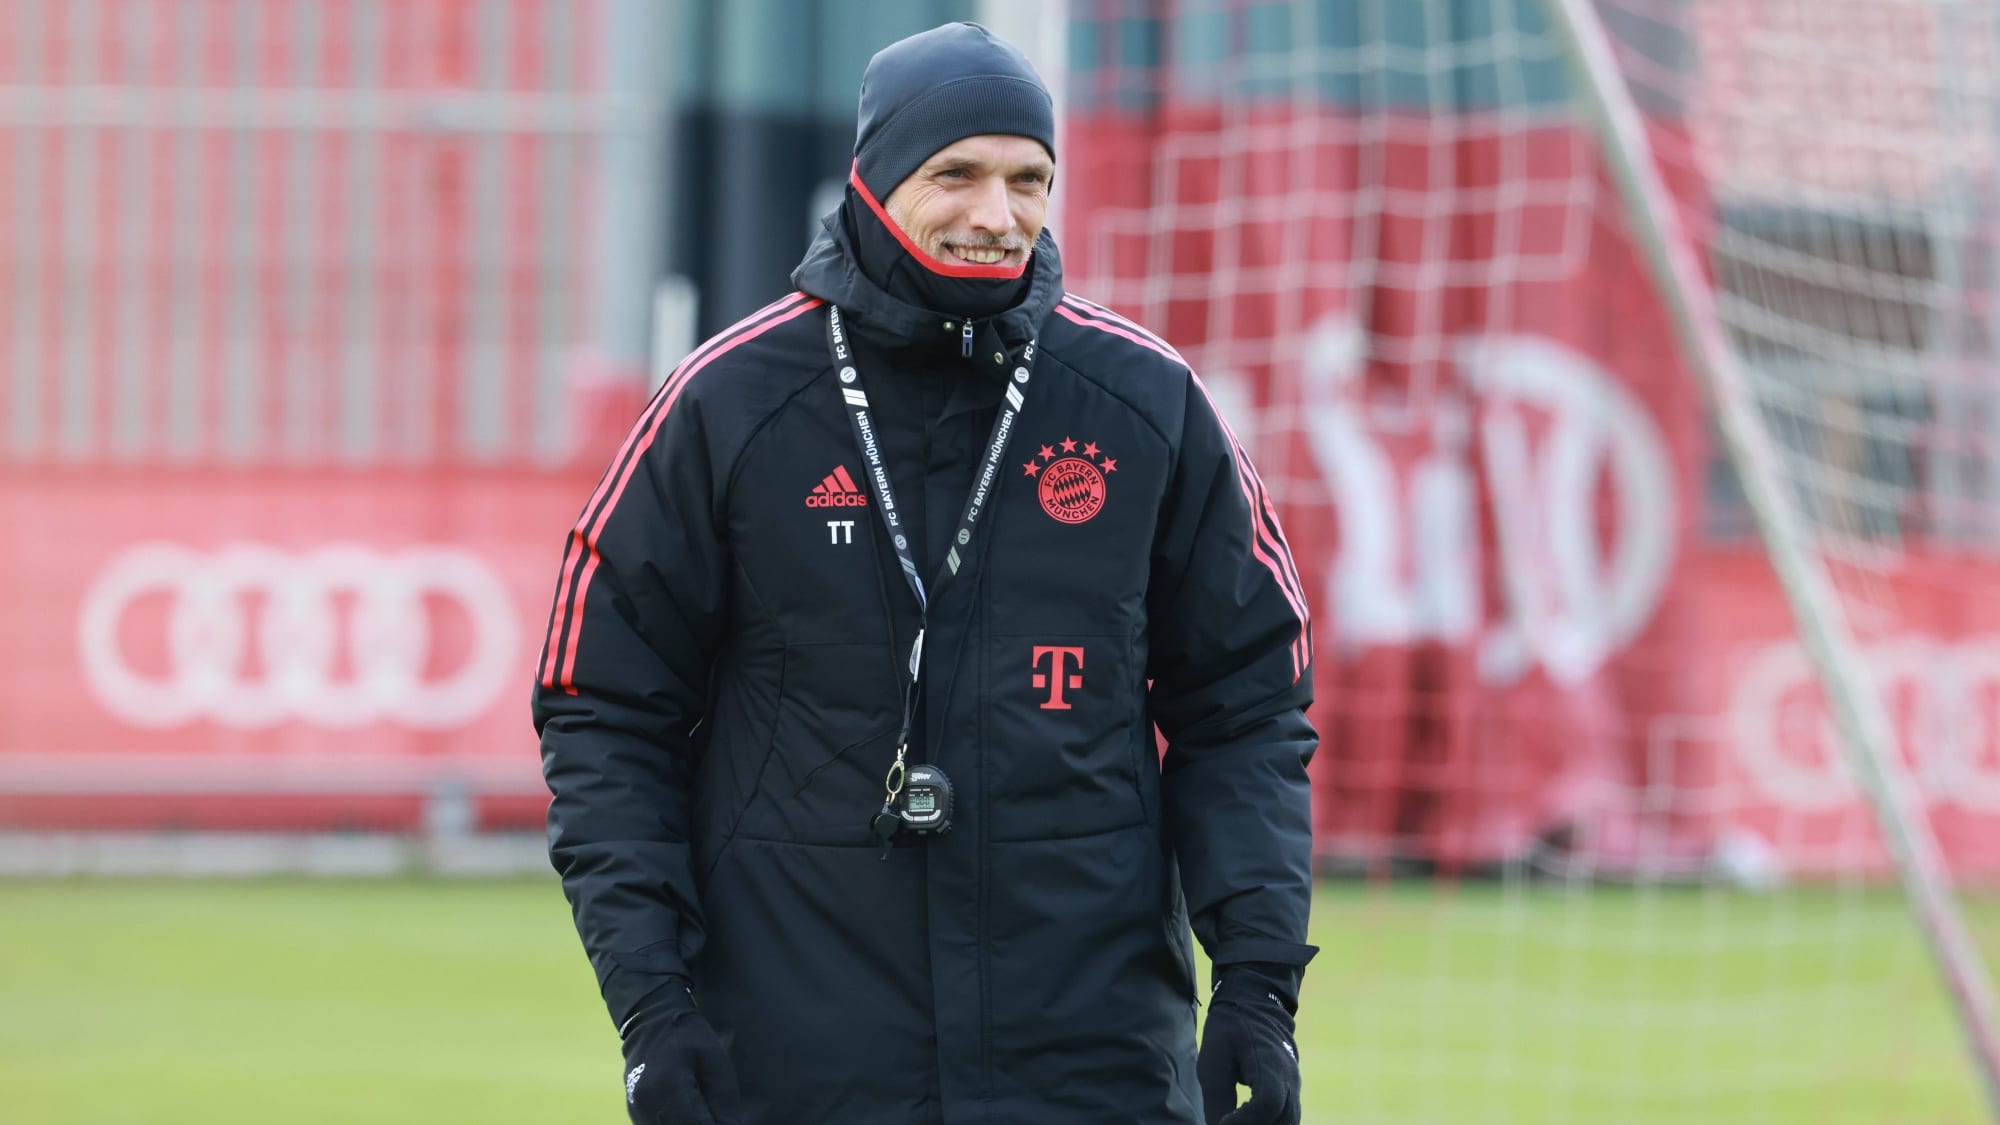 Dick eingepackt bei sonnigem, aber kaltem Wetter in München und mit einem Lächeln startete Thomas Tuchel am Dienstagvormittag in seine erste Trainingseinheit als neuer Trainer des FC Bayern.